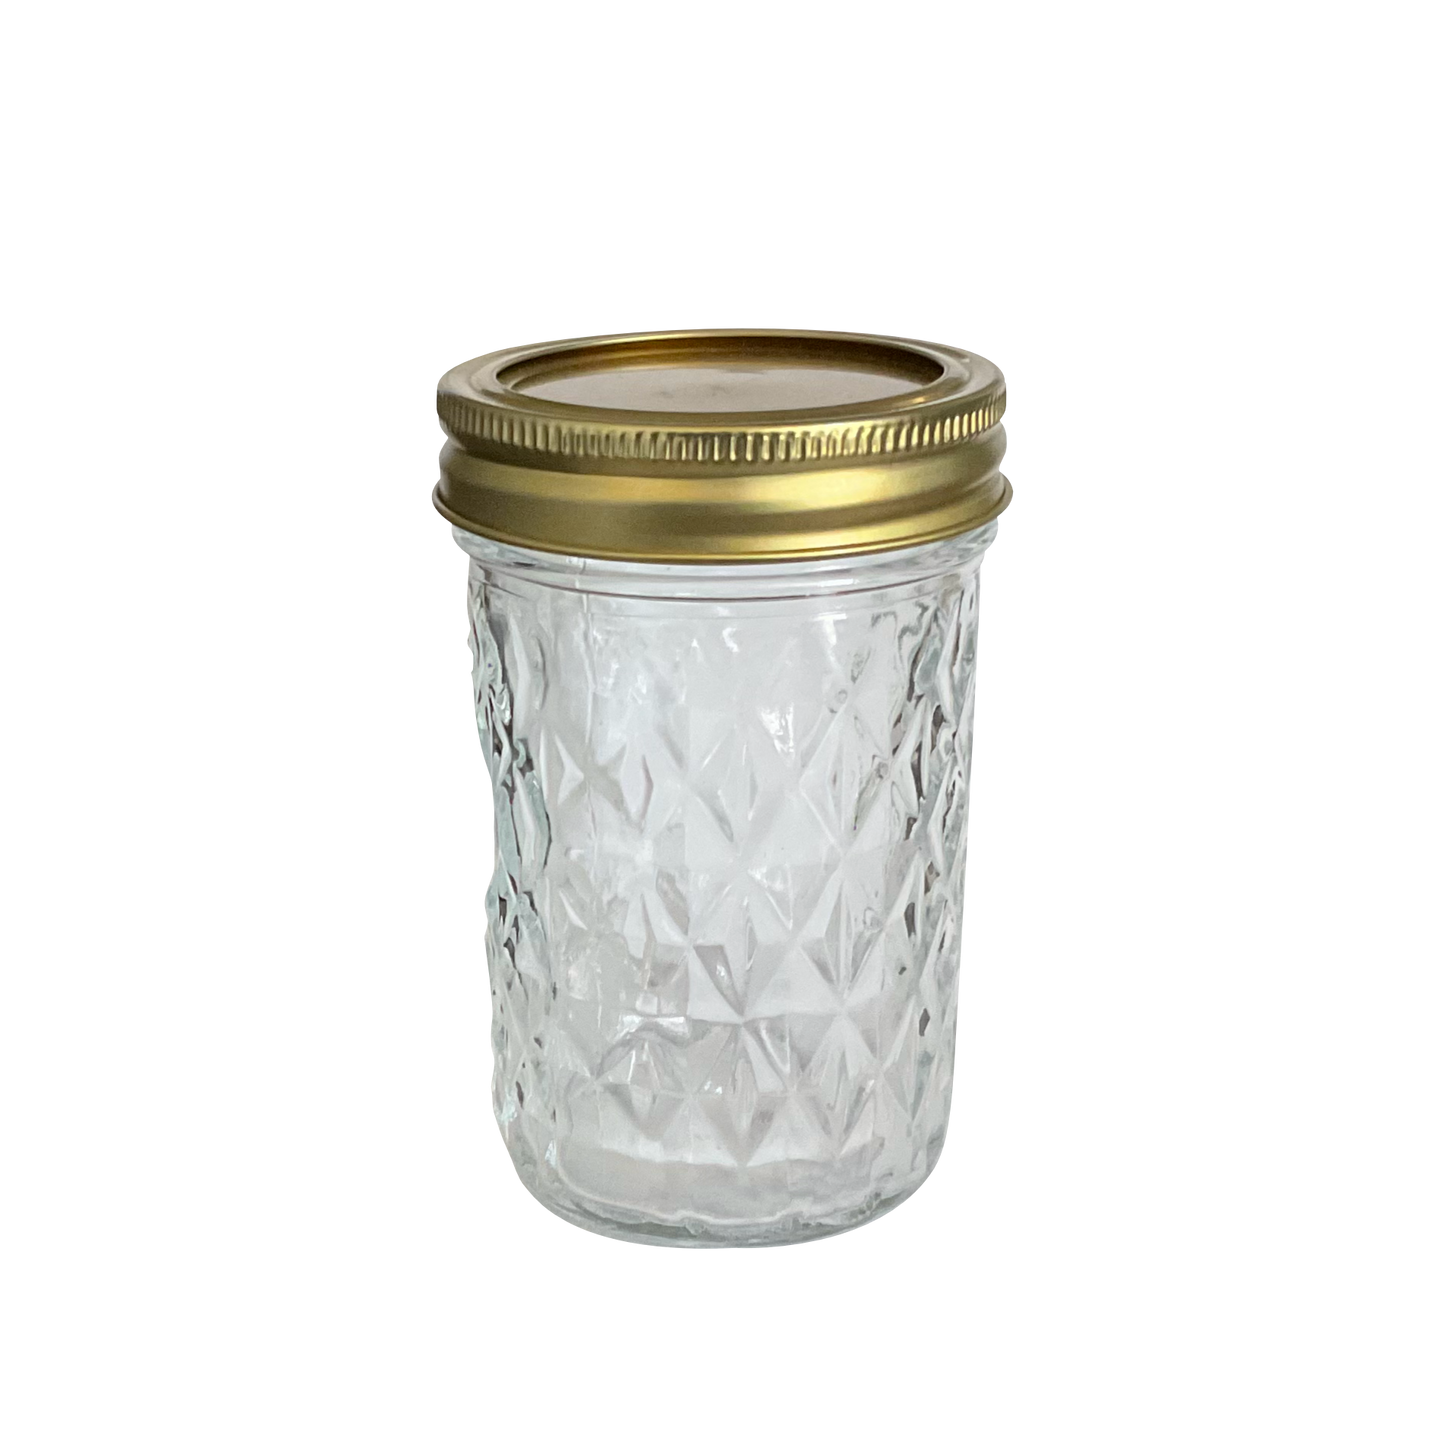 8 oz (240 ml) Mason Jar with Gold Lid